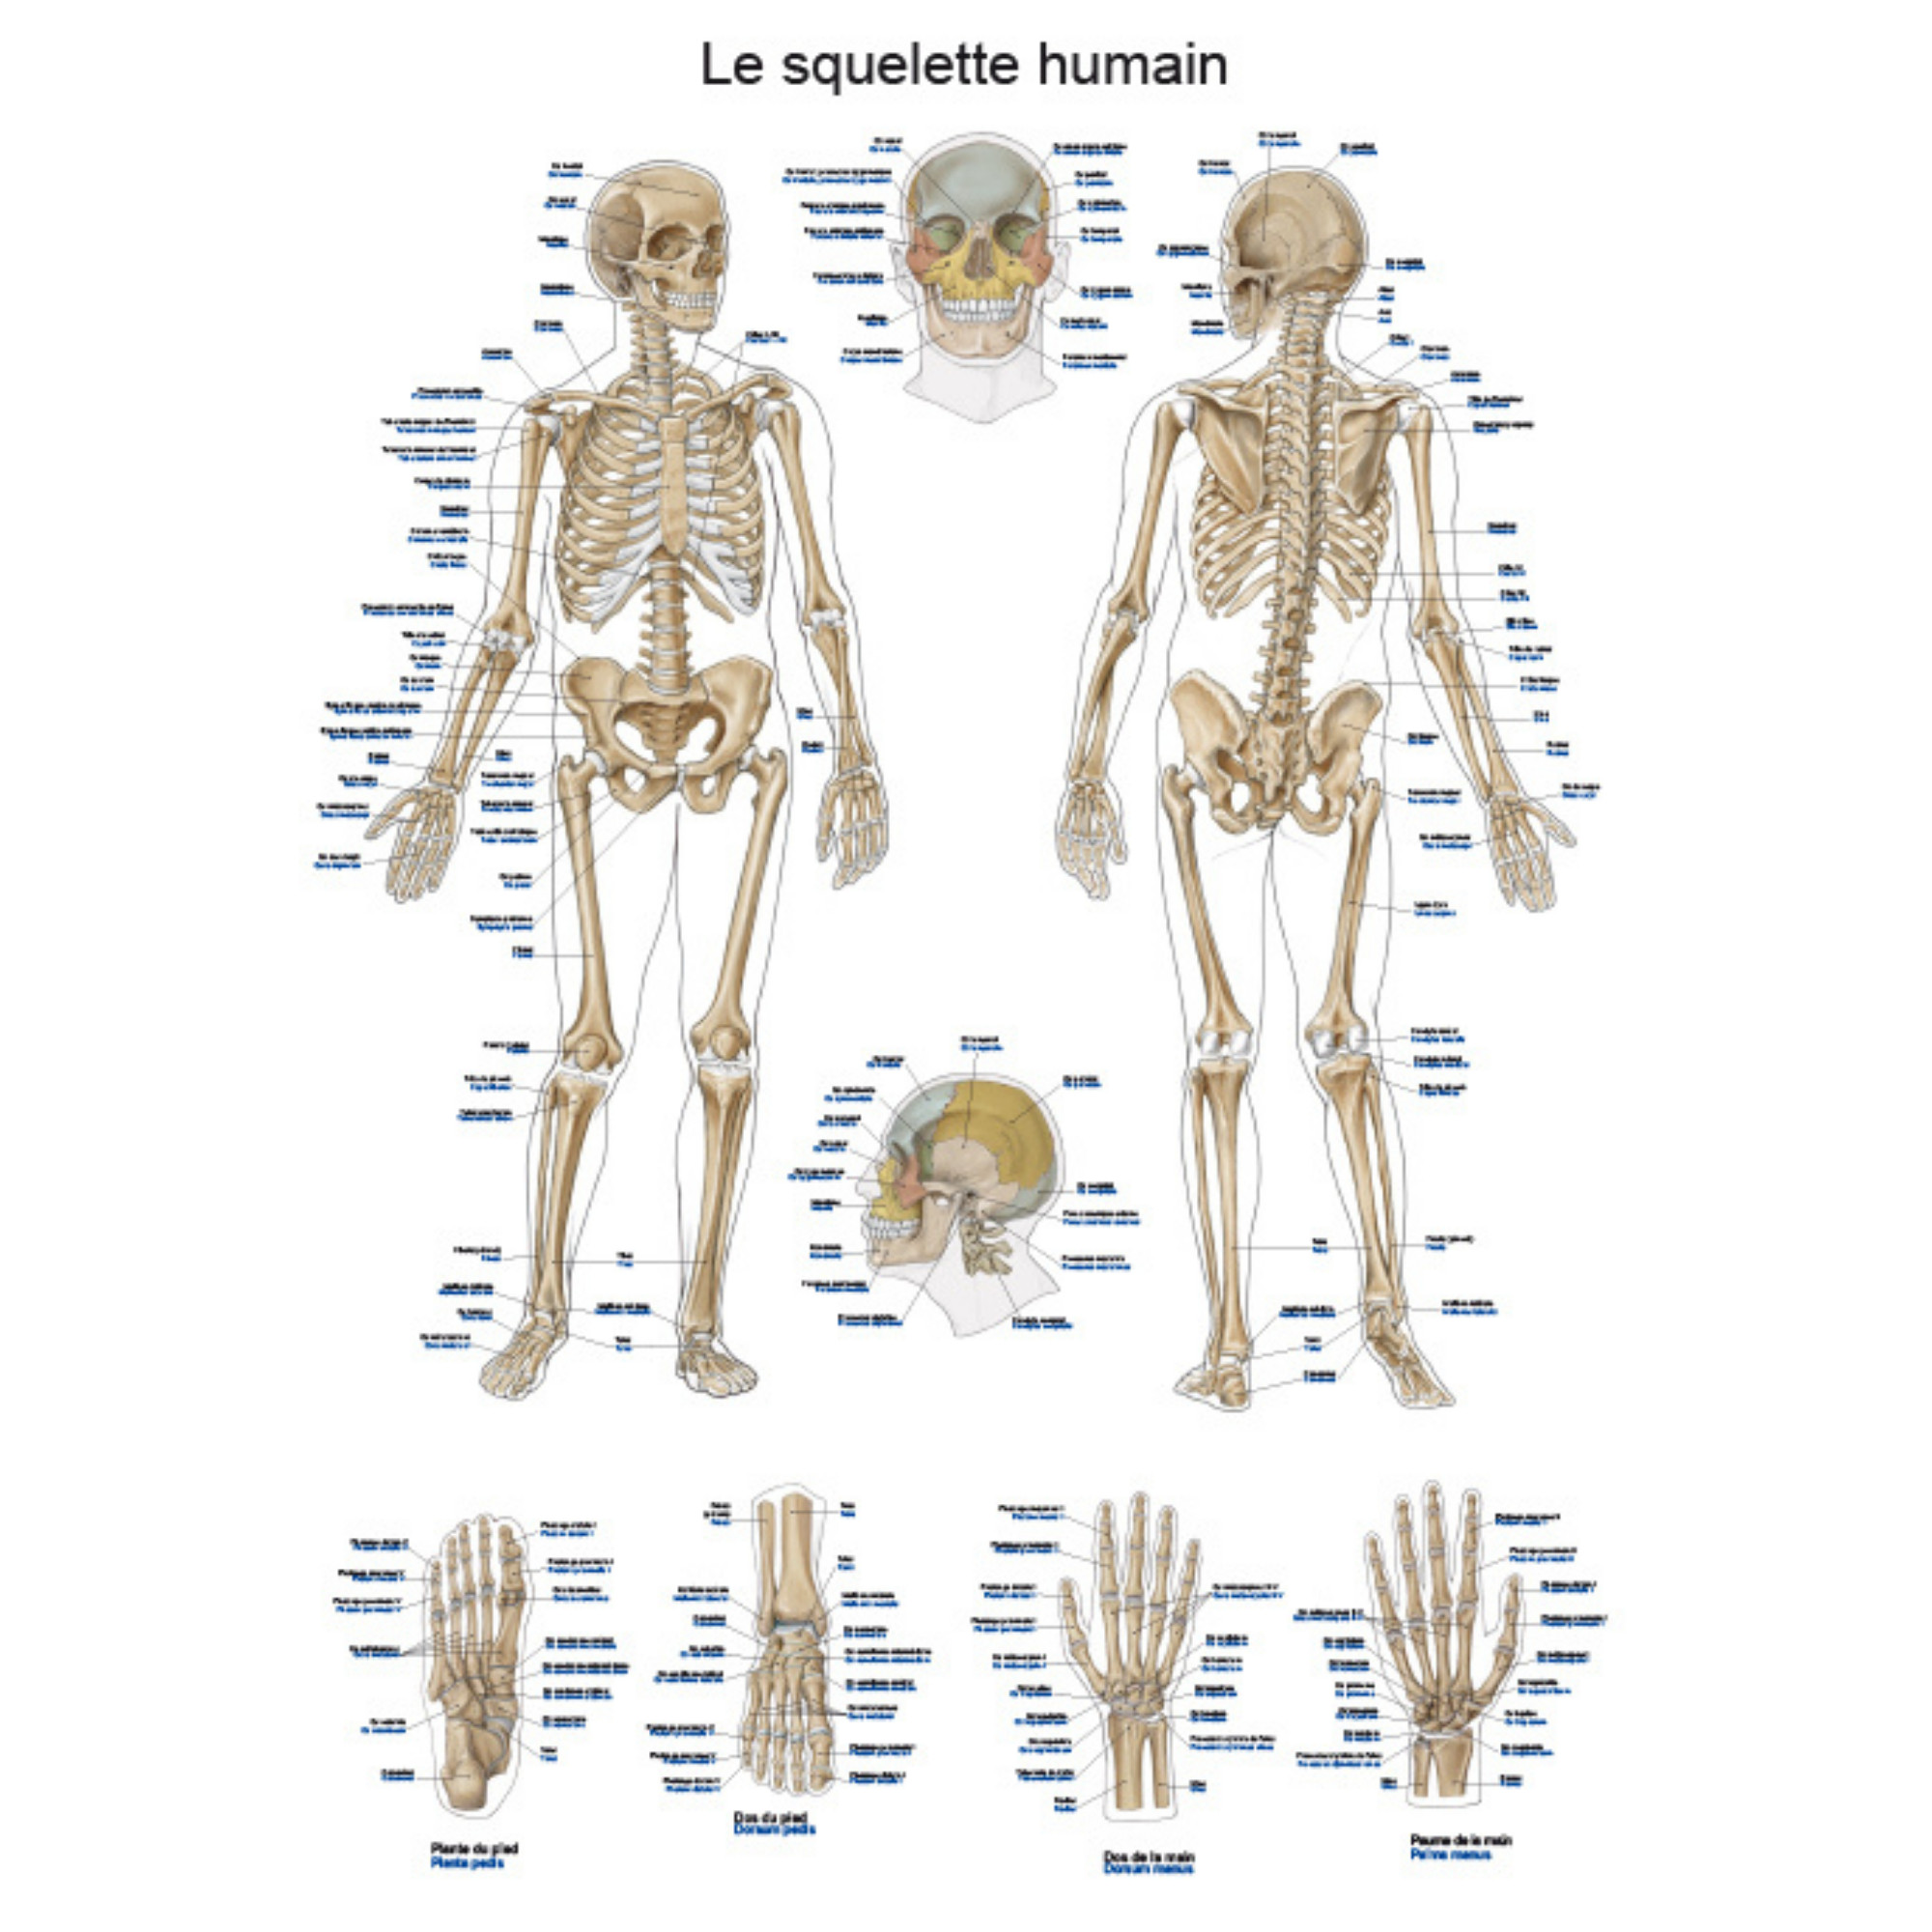 Planche anatomique - Le squelette humain - 50 x 70 cm - Français et latin |  My Médical